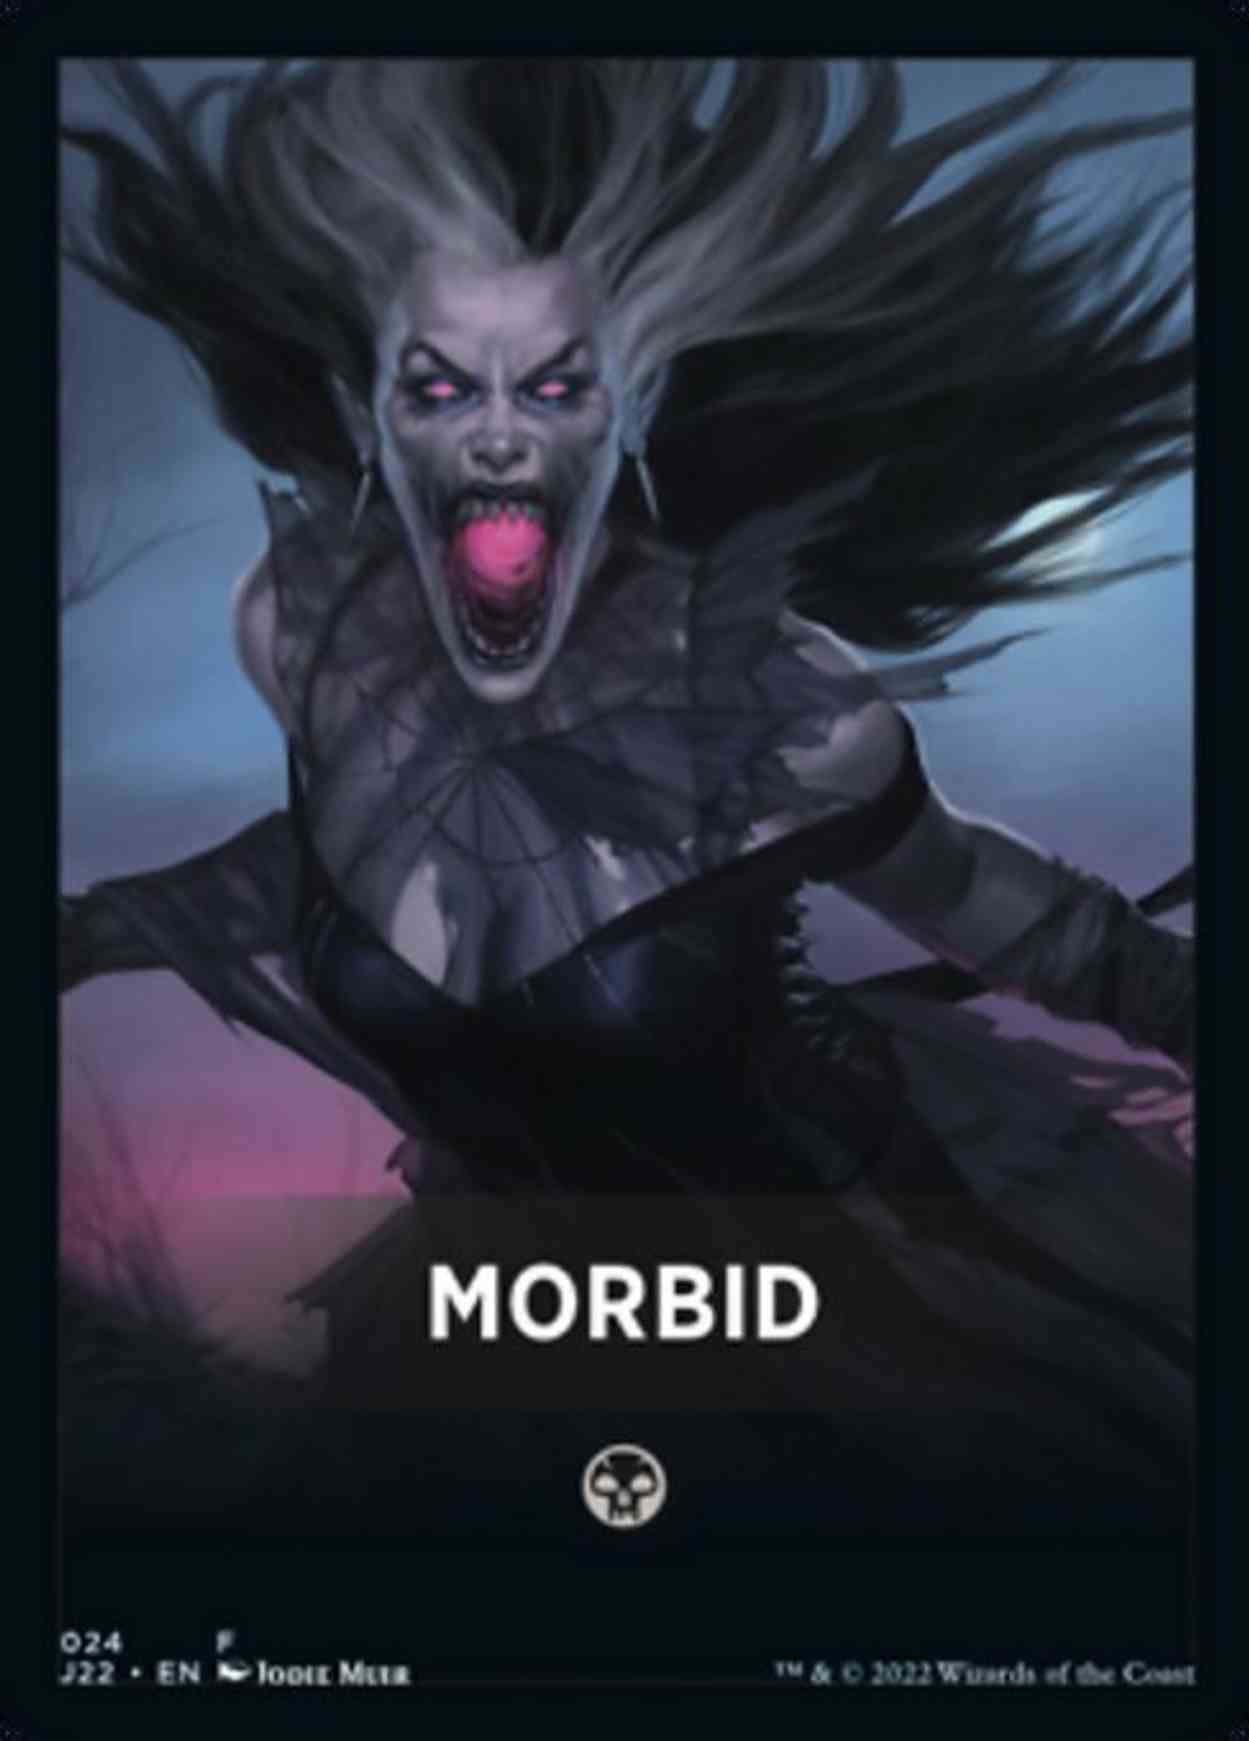 Morbid Theme Card magic card front